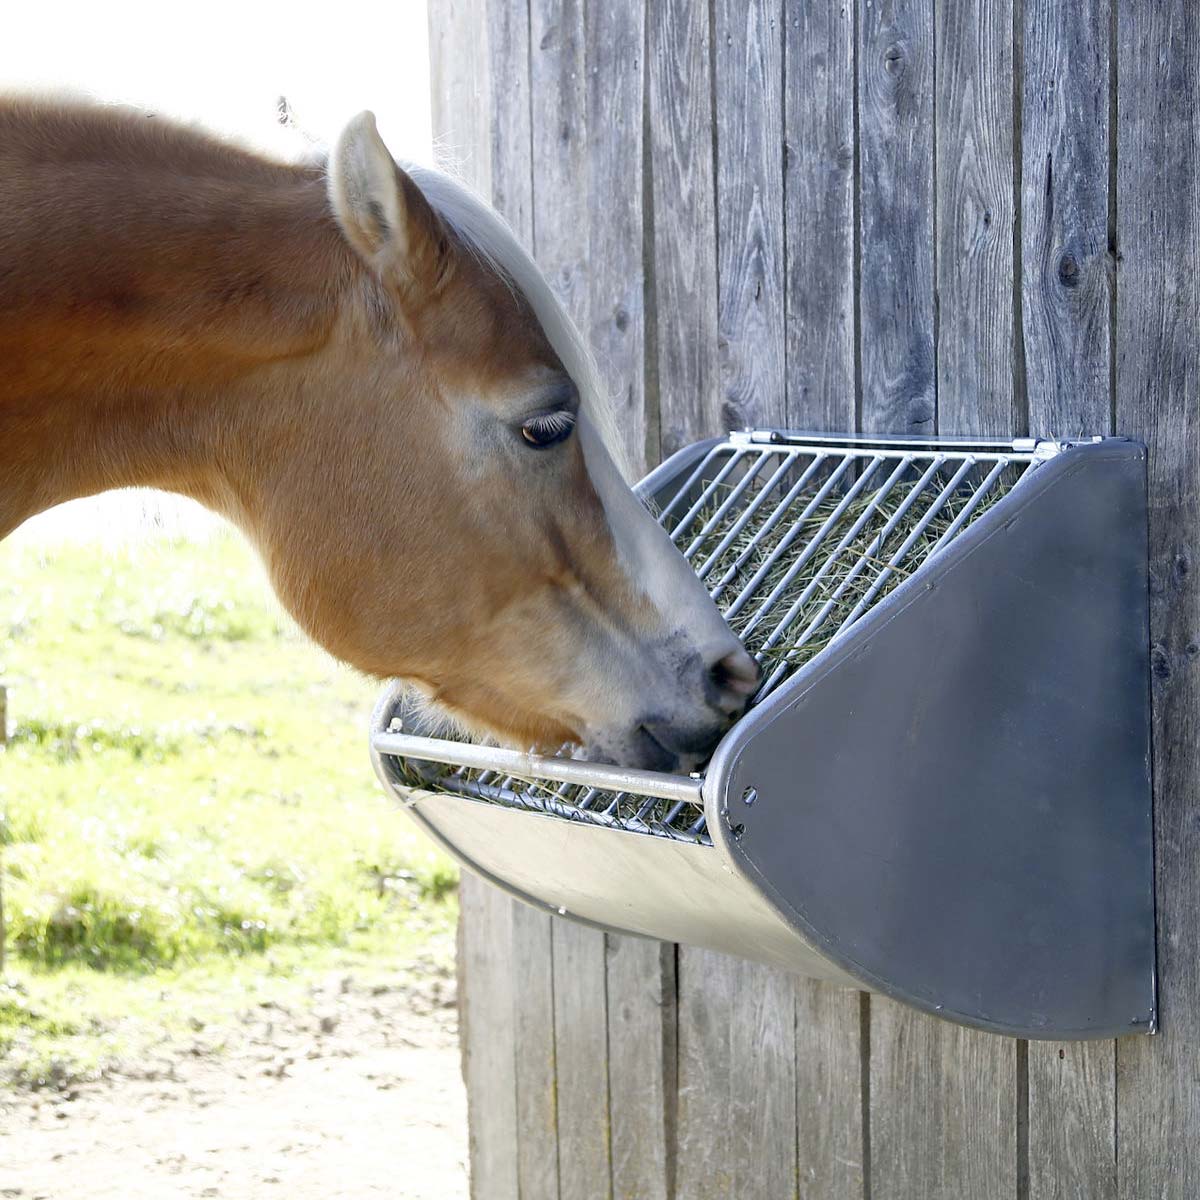 Mangiatoia a parete per cavalli con griglia salvaforaggio